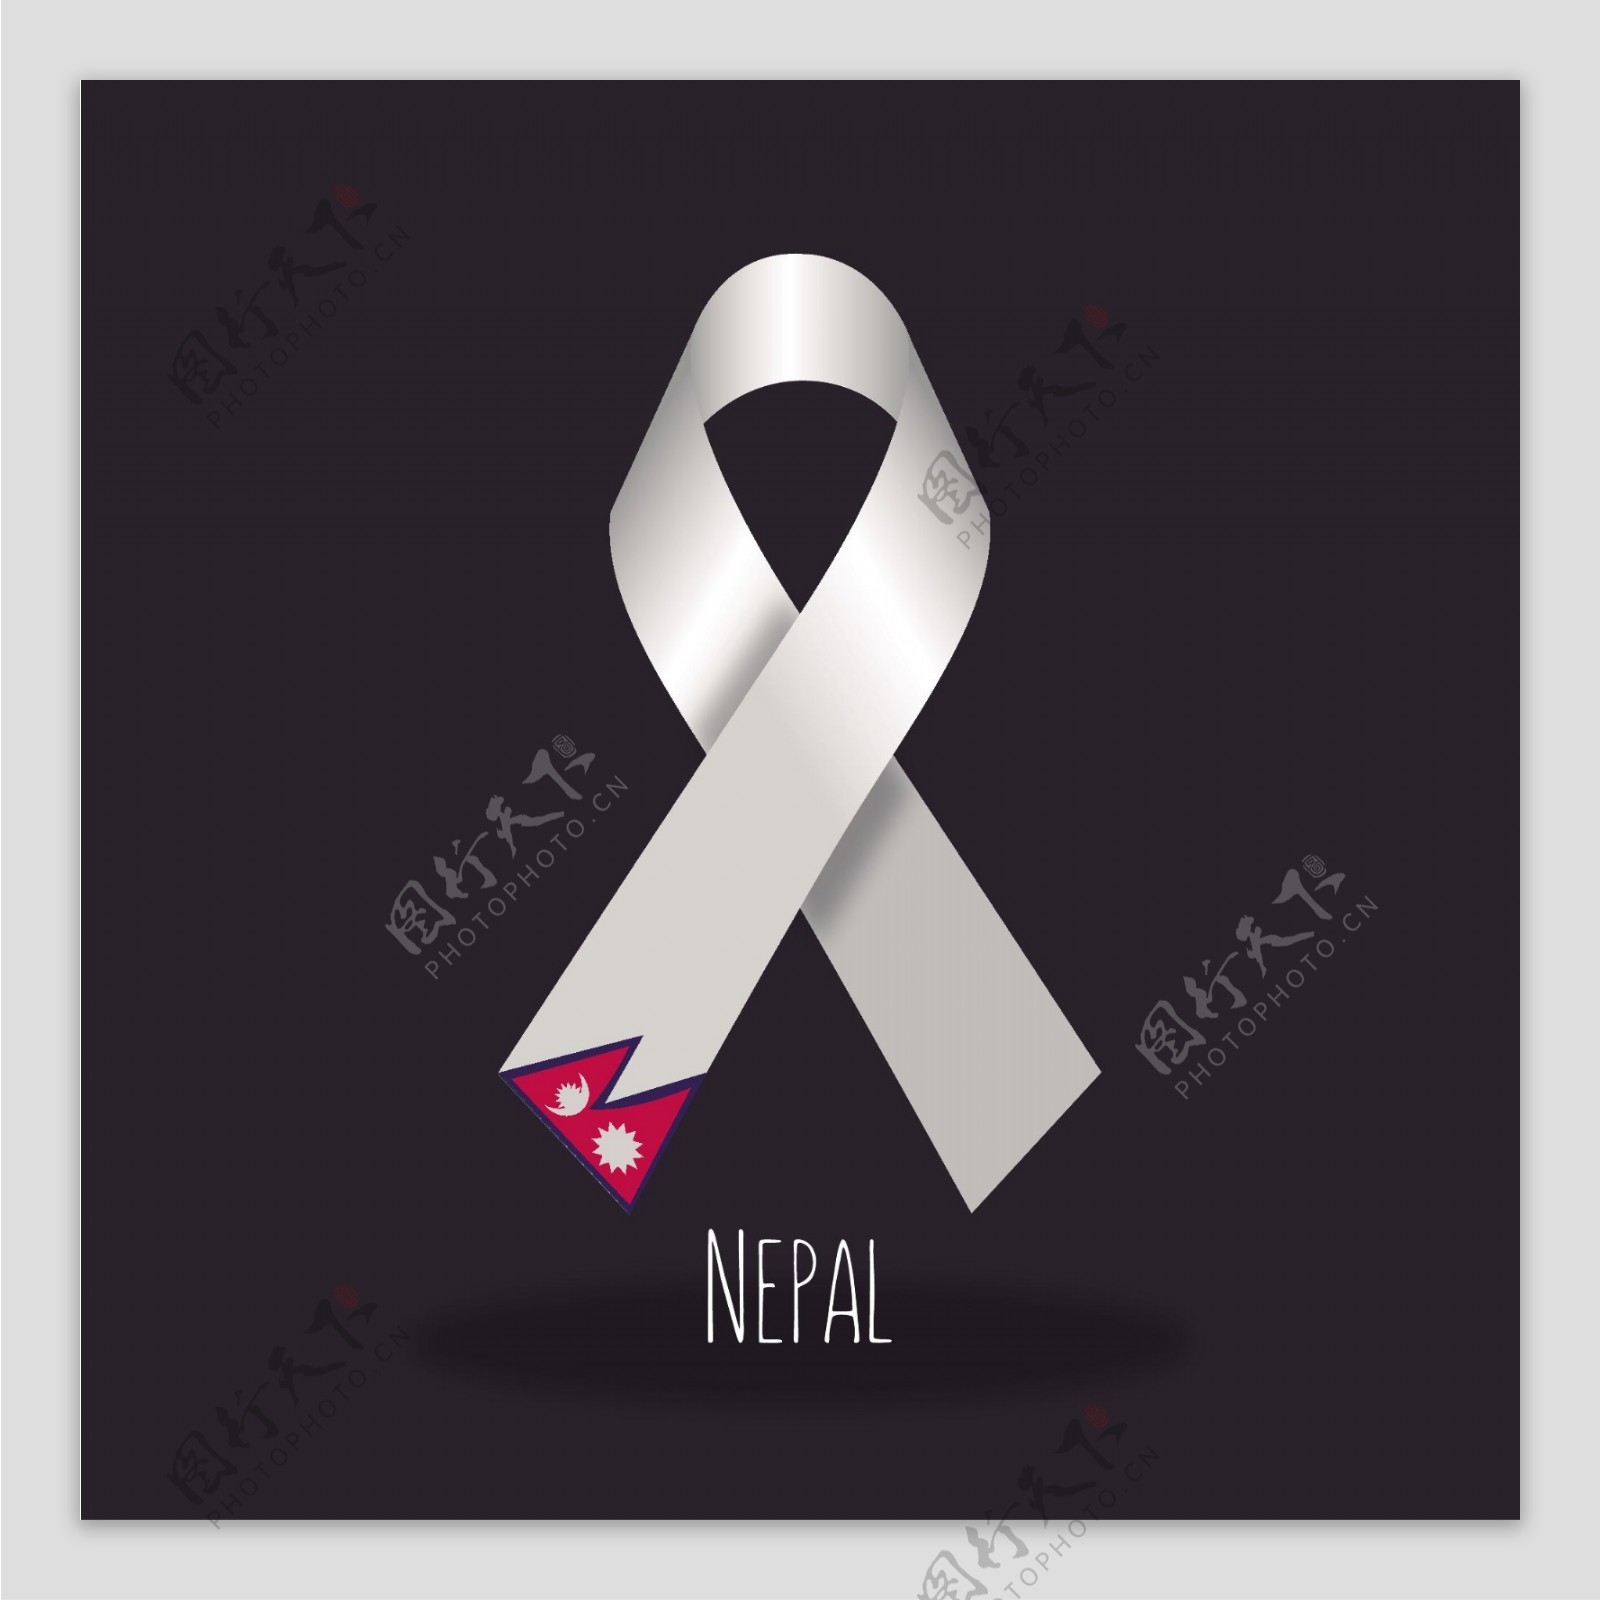 尼泊尔国旗丝带设计矢量素材